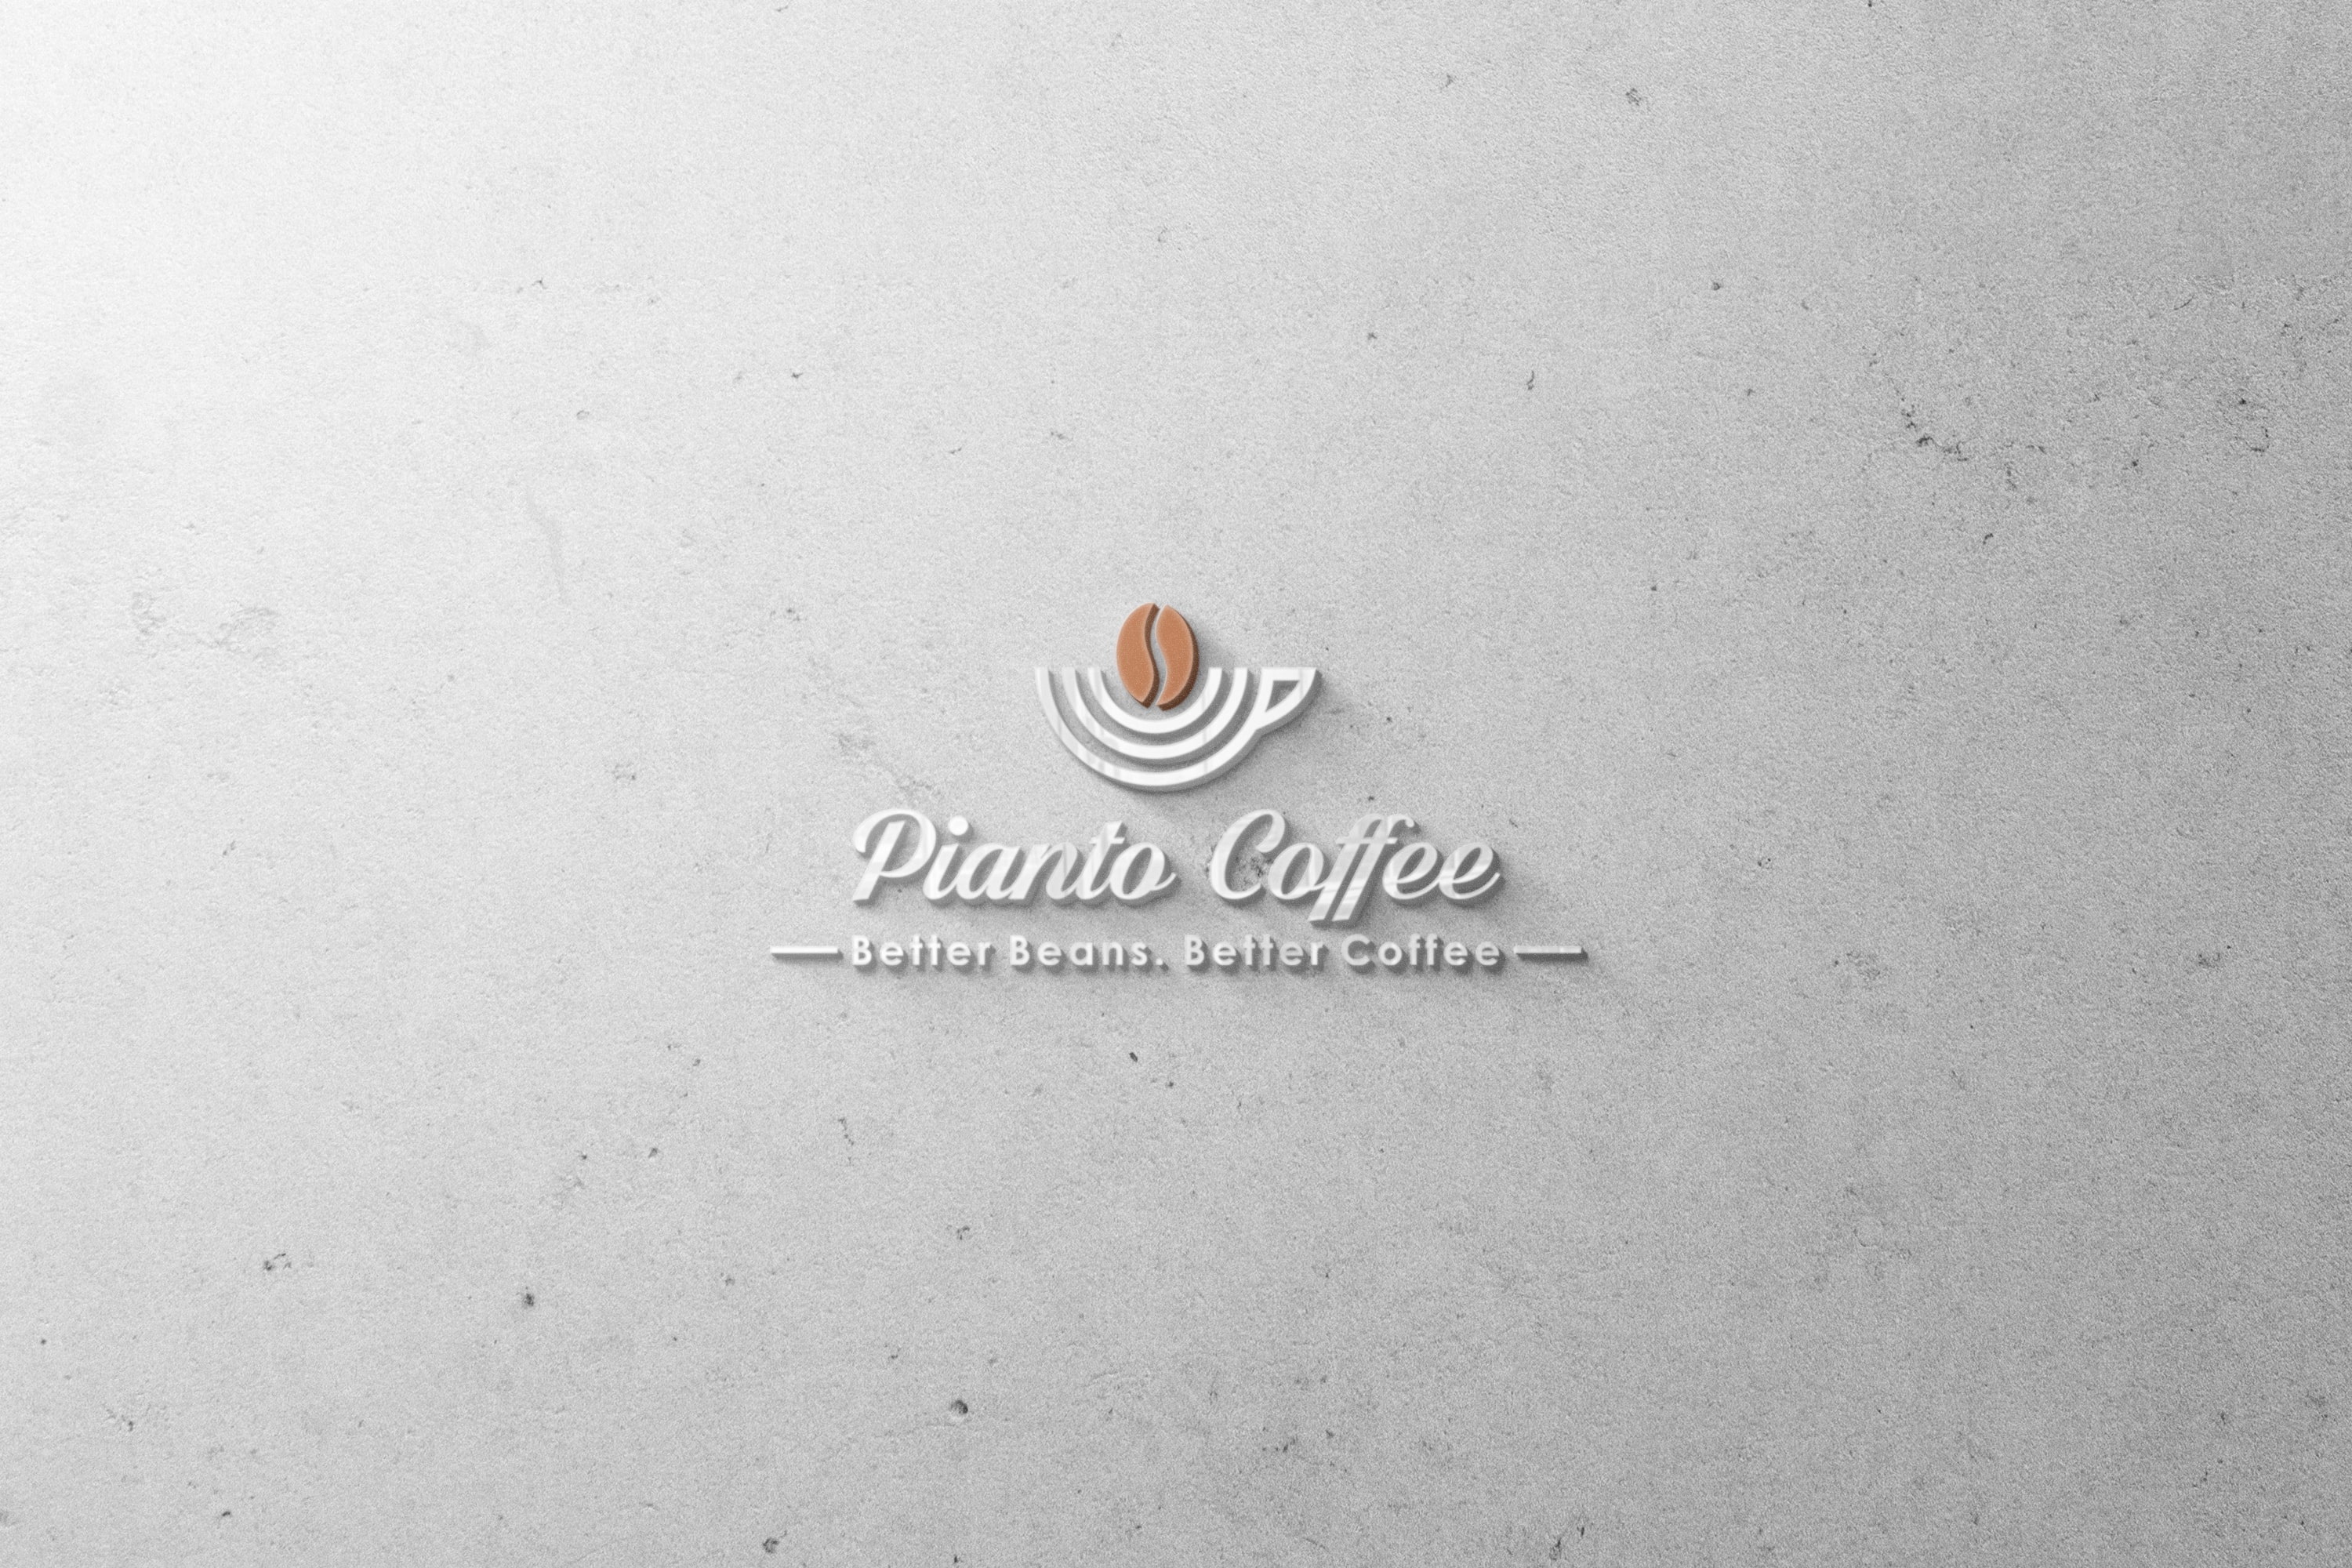 Pianto Coffee